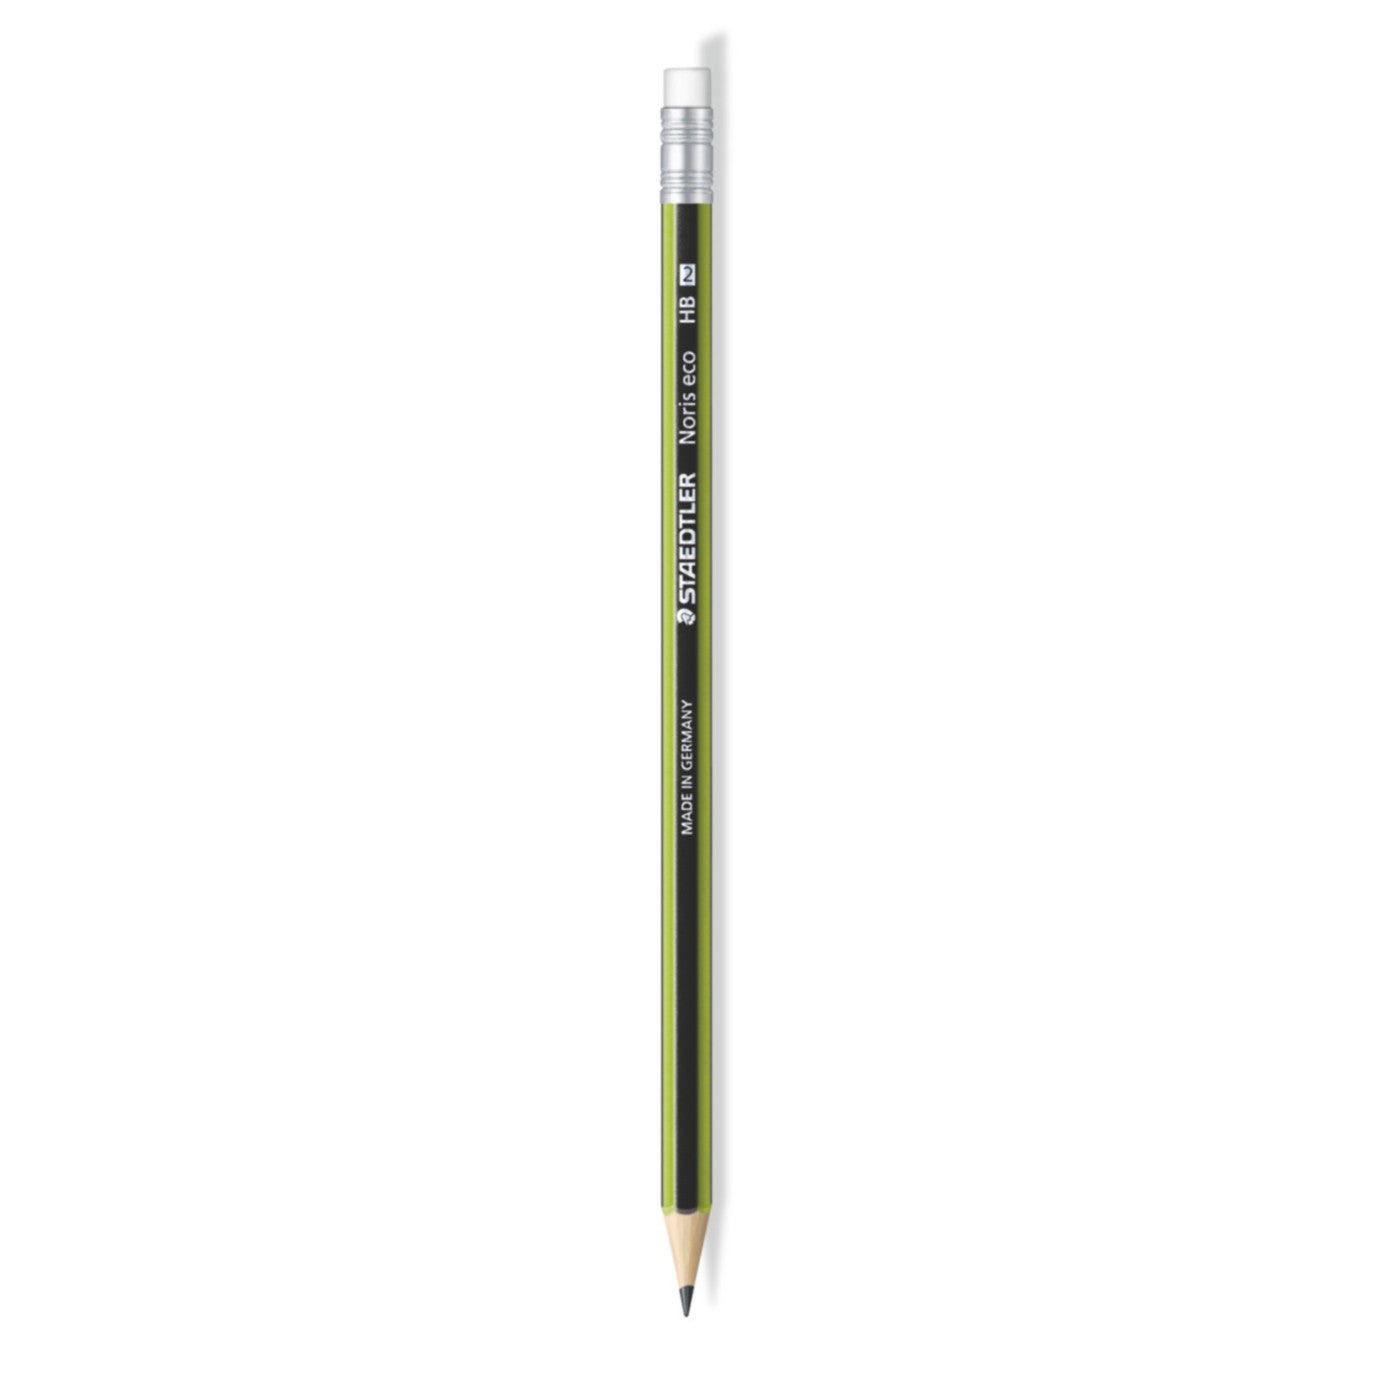 Staedtler Pencil Noris Eco with Eraser Tip - HB - School Depot NZ
